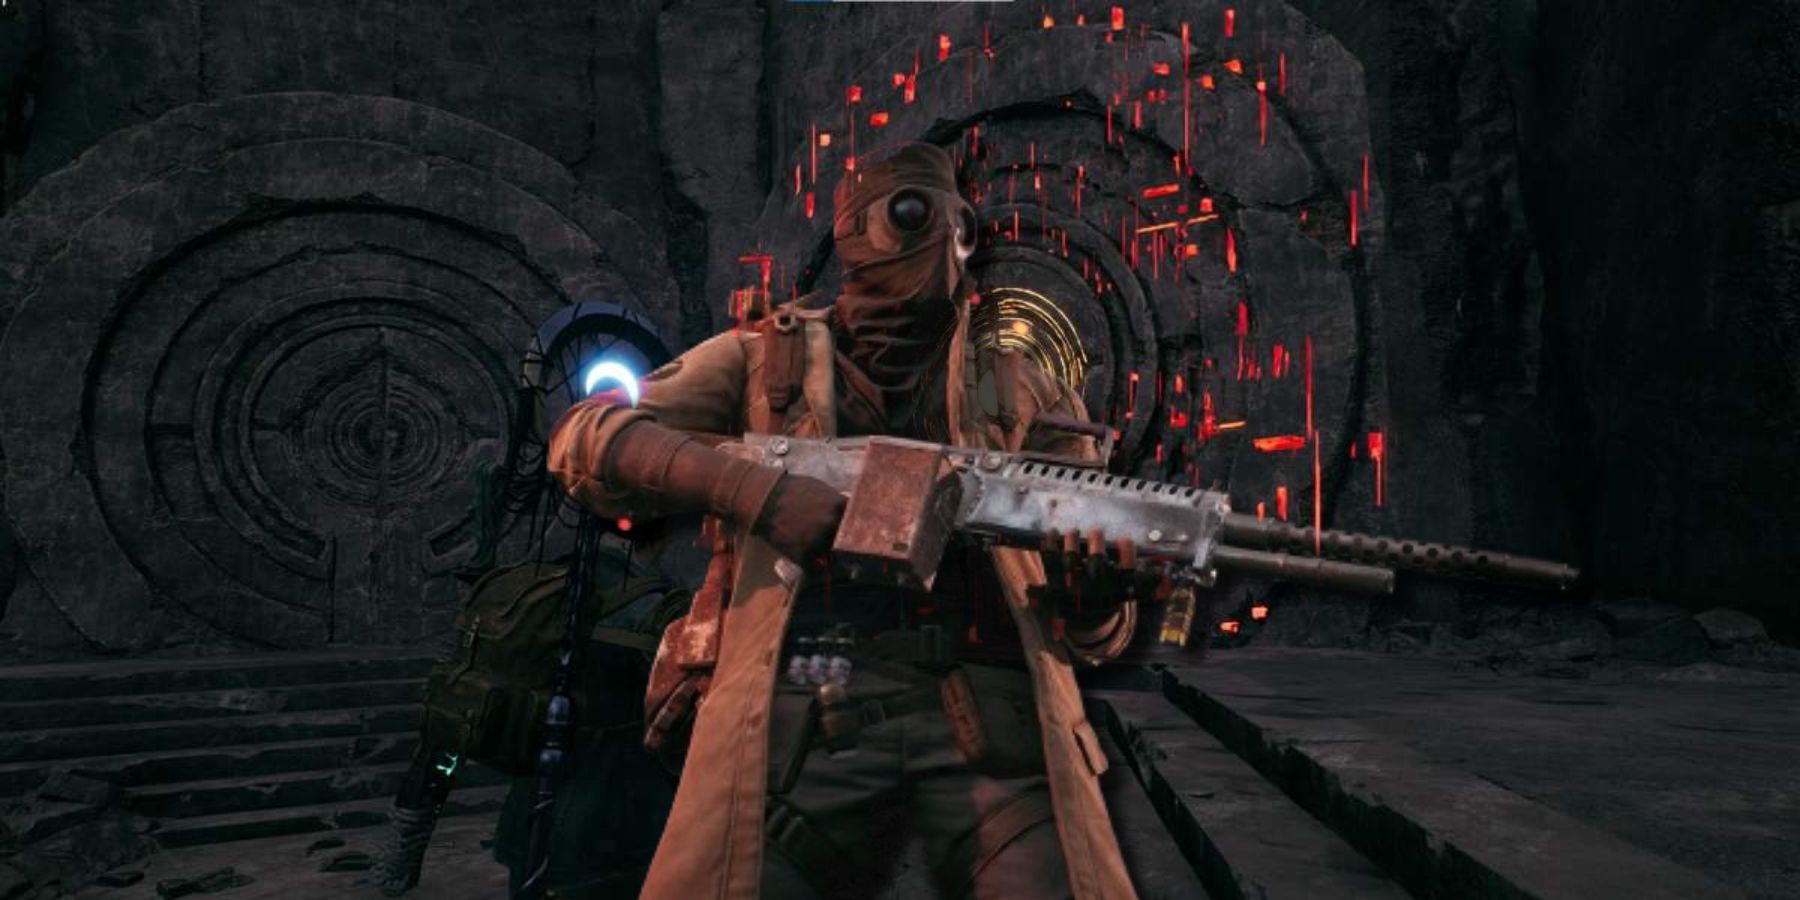 remnant 2 archon class secret labyrinth unlock gunfire games future double-edged sword